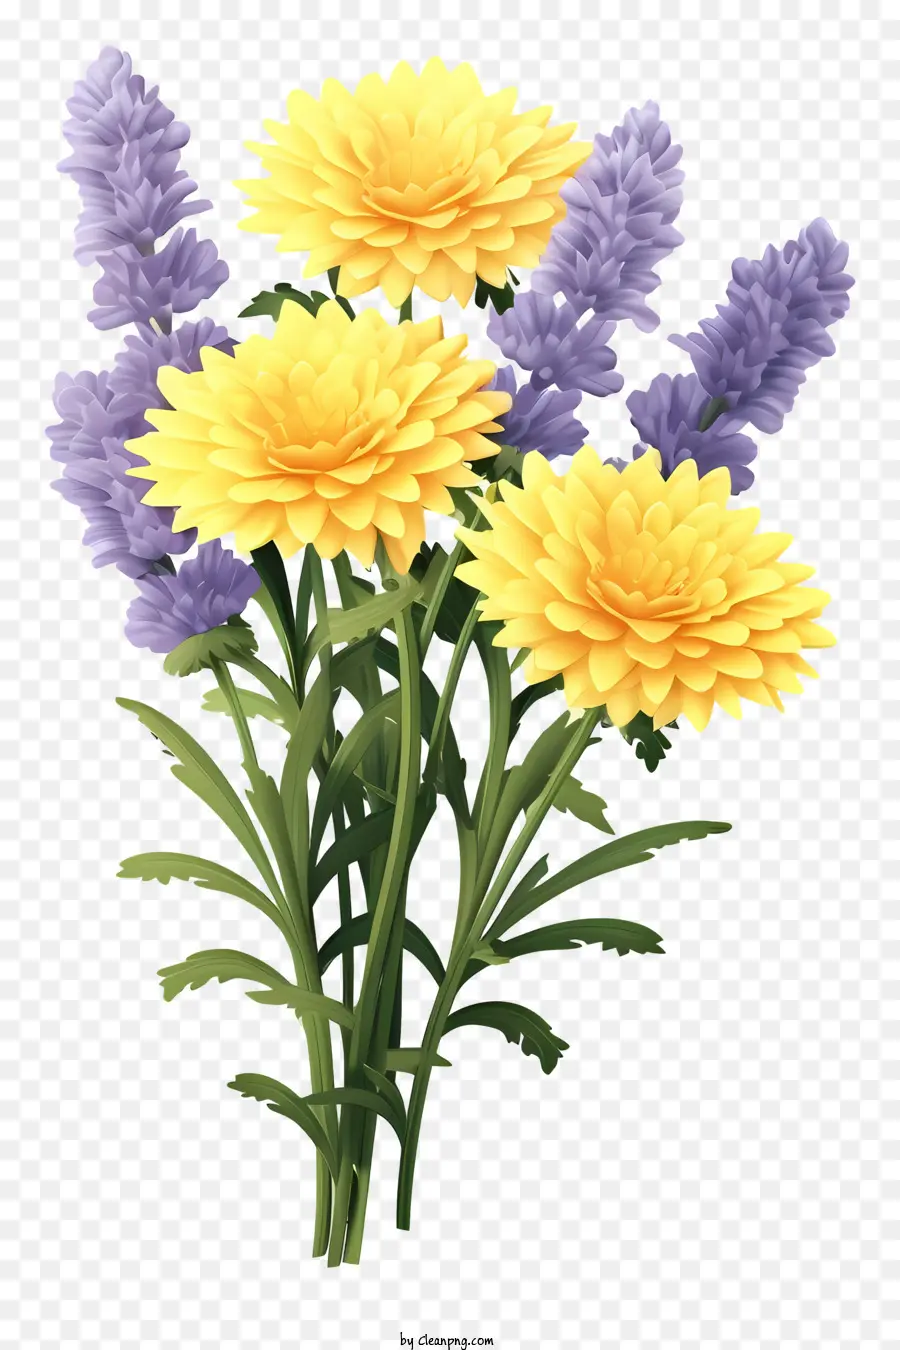 Bó hoa màu vàng hoa màu xanh lá cây sắp xếp nền màu đen - Những bó hoa màu vàng và màu xanh lá cây rực rỡ